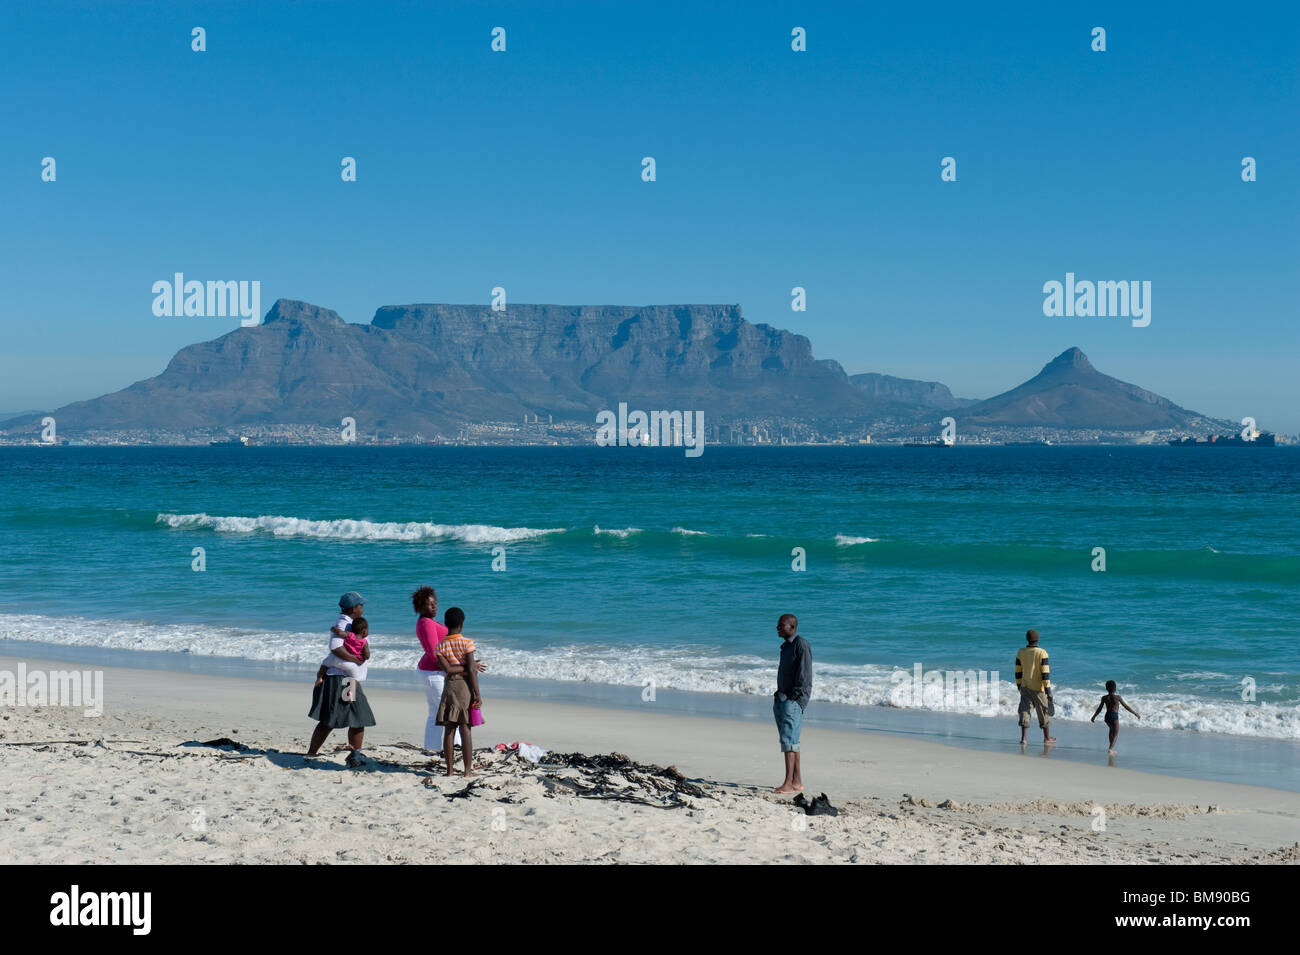 Une famille bénéficie d'une journée ensoleillée sur la plage de Bloubergstrand Cape Town Afrique du Sud Banque D'Images